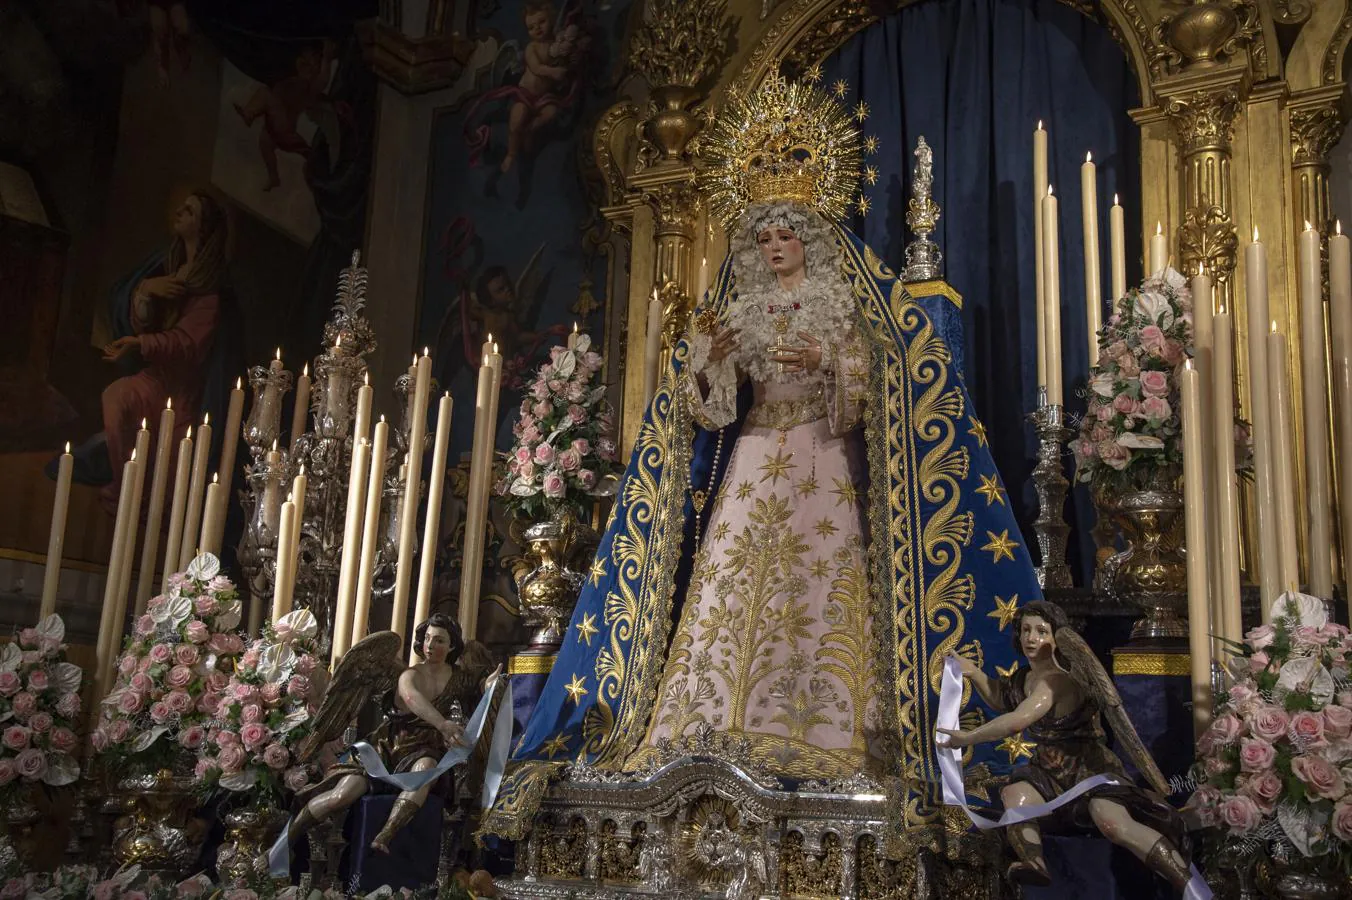 El altar de cultos de la Virgen de los Ángeles de los Negritos